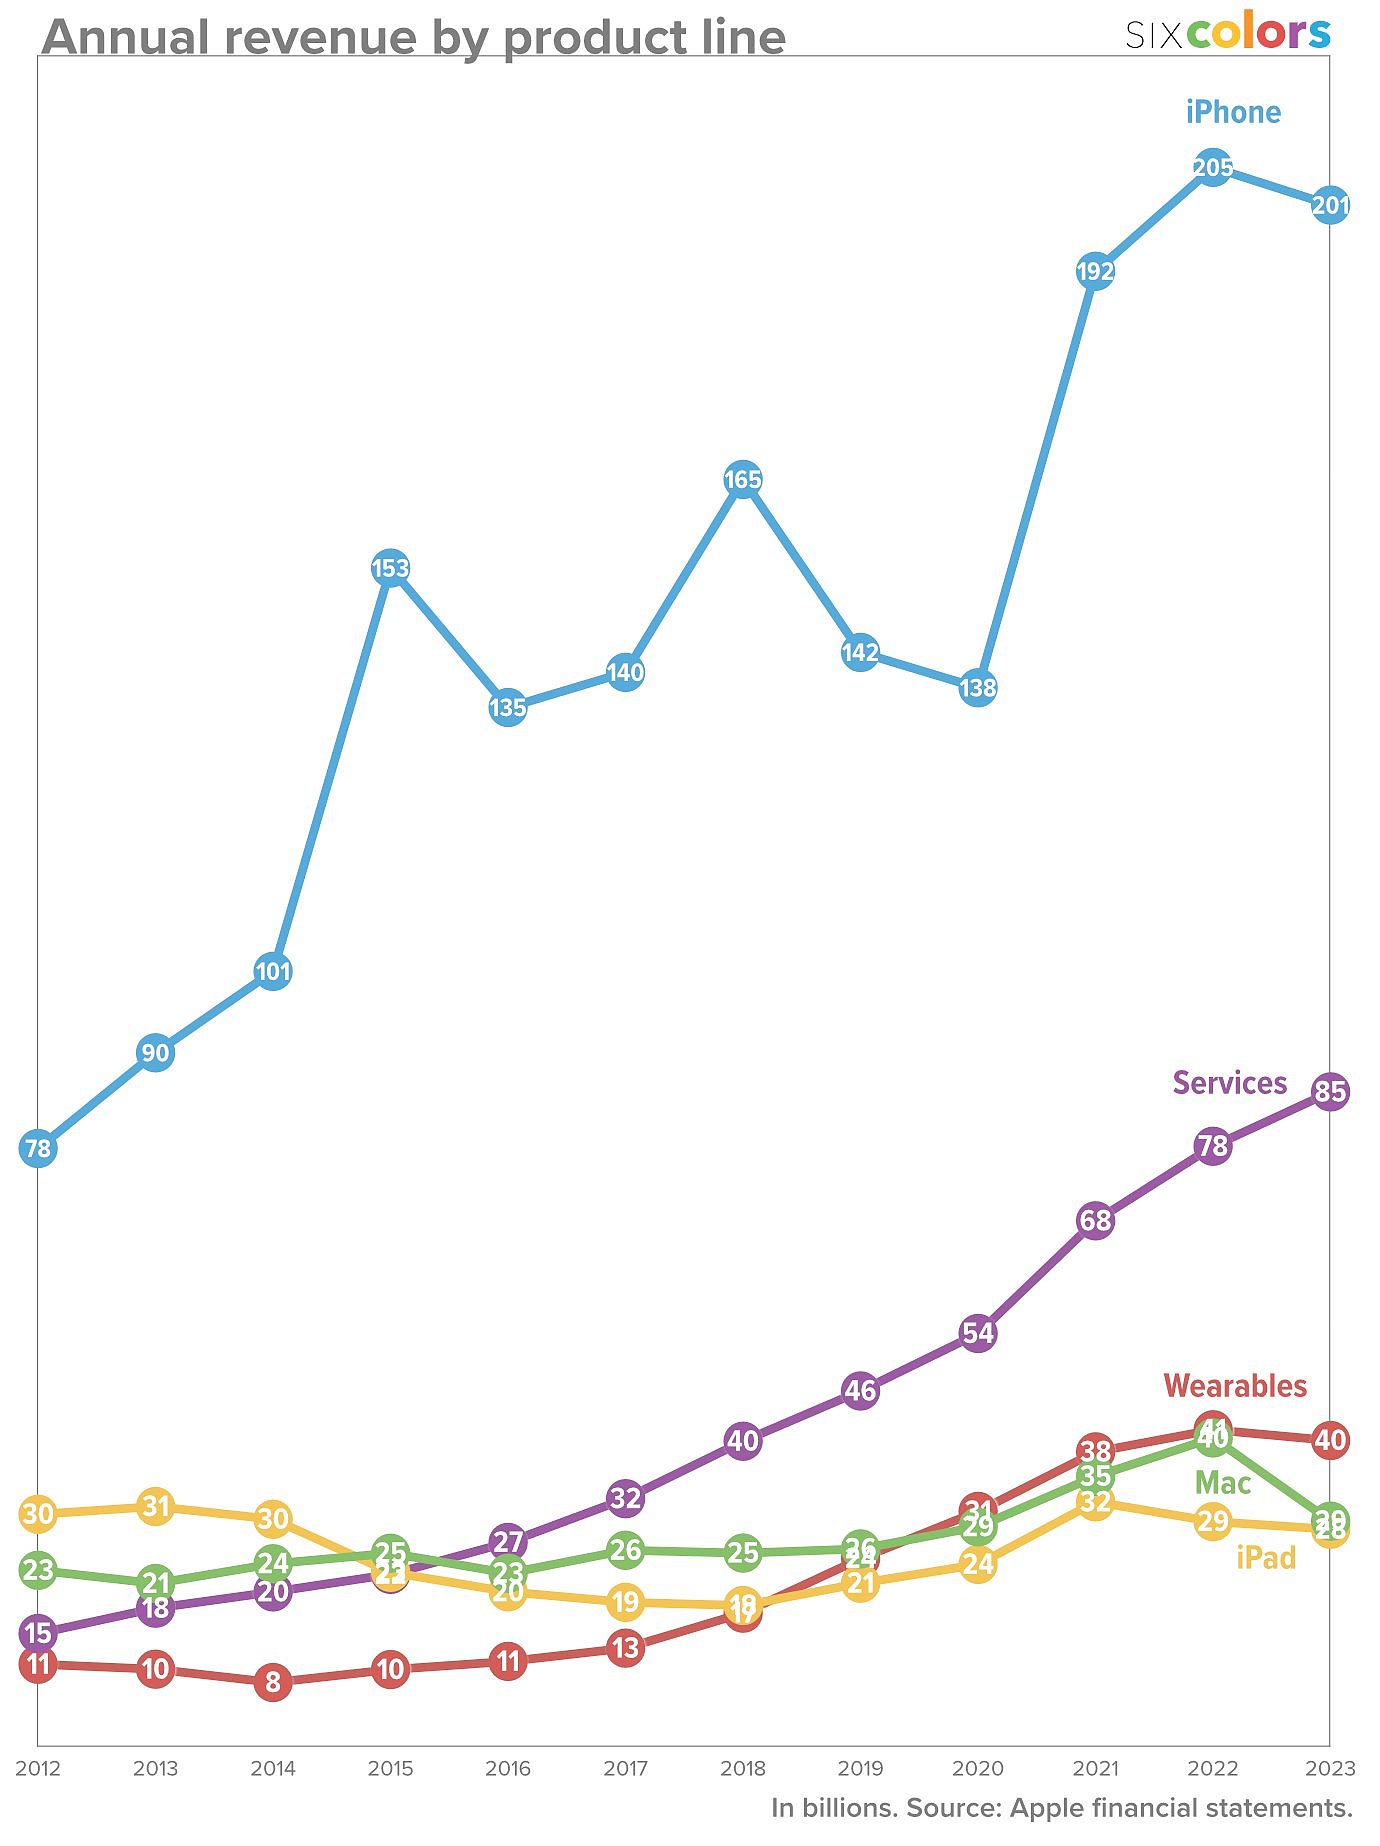 苹果 1999-2023 财年 iPhone、Mac 等业务财报数据一览 - 7